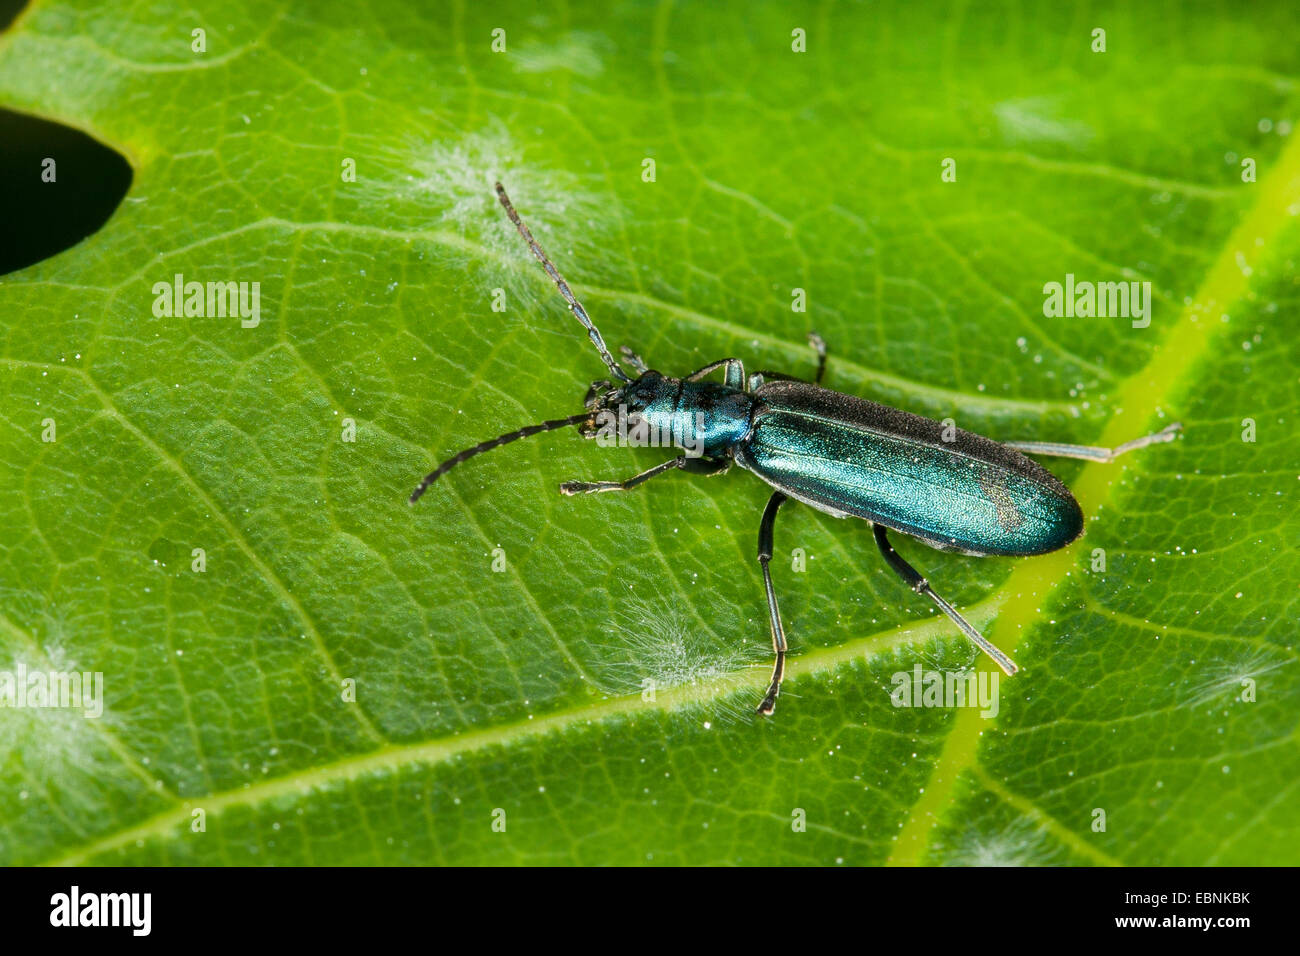 Se alimentan de polen (escarabajo Asclera Ischnomera spec., especificaciones, Ischnomera cyanea oder Ischnomera caerulea), en una lámina, Alemania Foto de stock